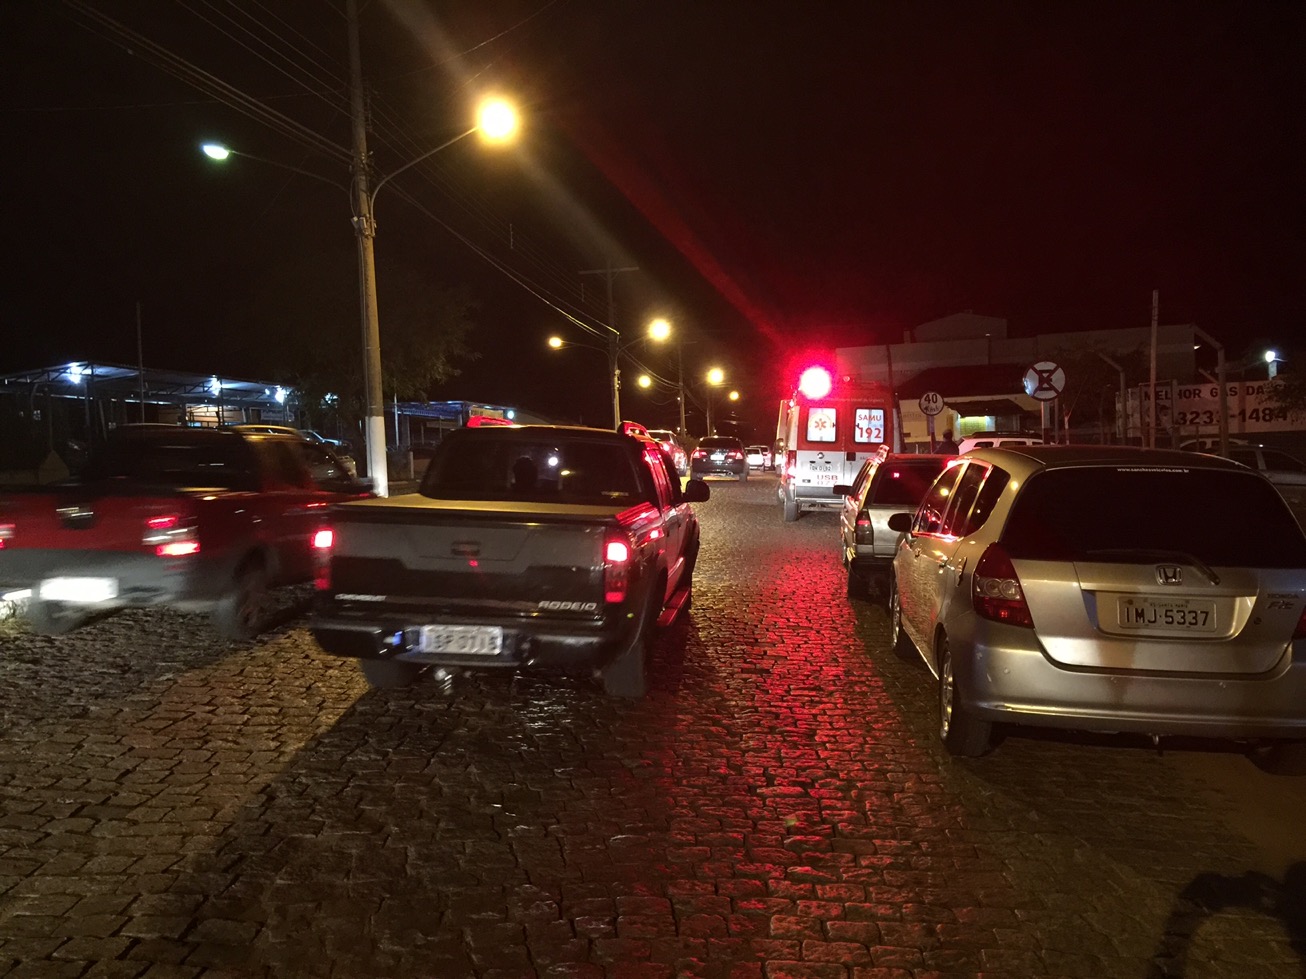 Inusitado: ciclista embriagado colide em carro estacionado na Avenida Getúlio Vargas